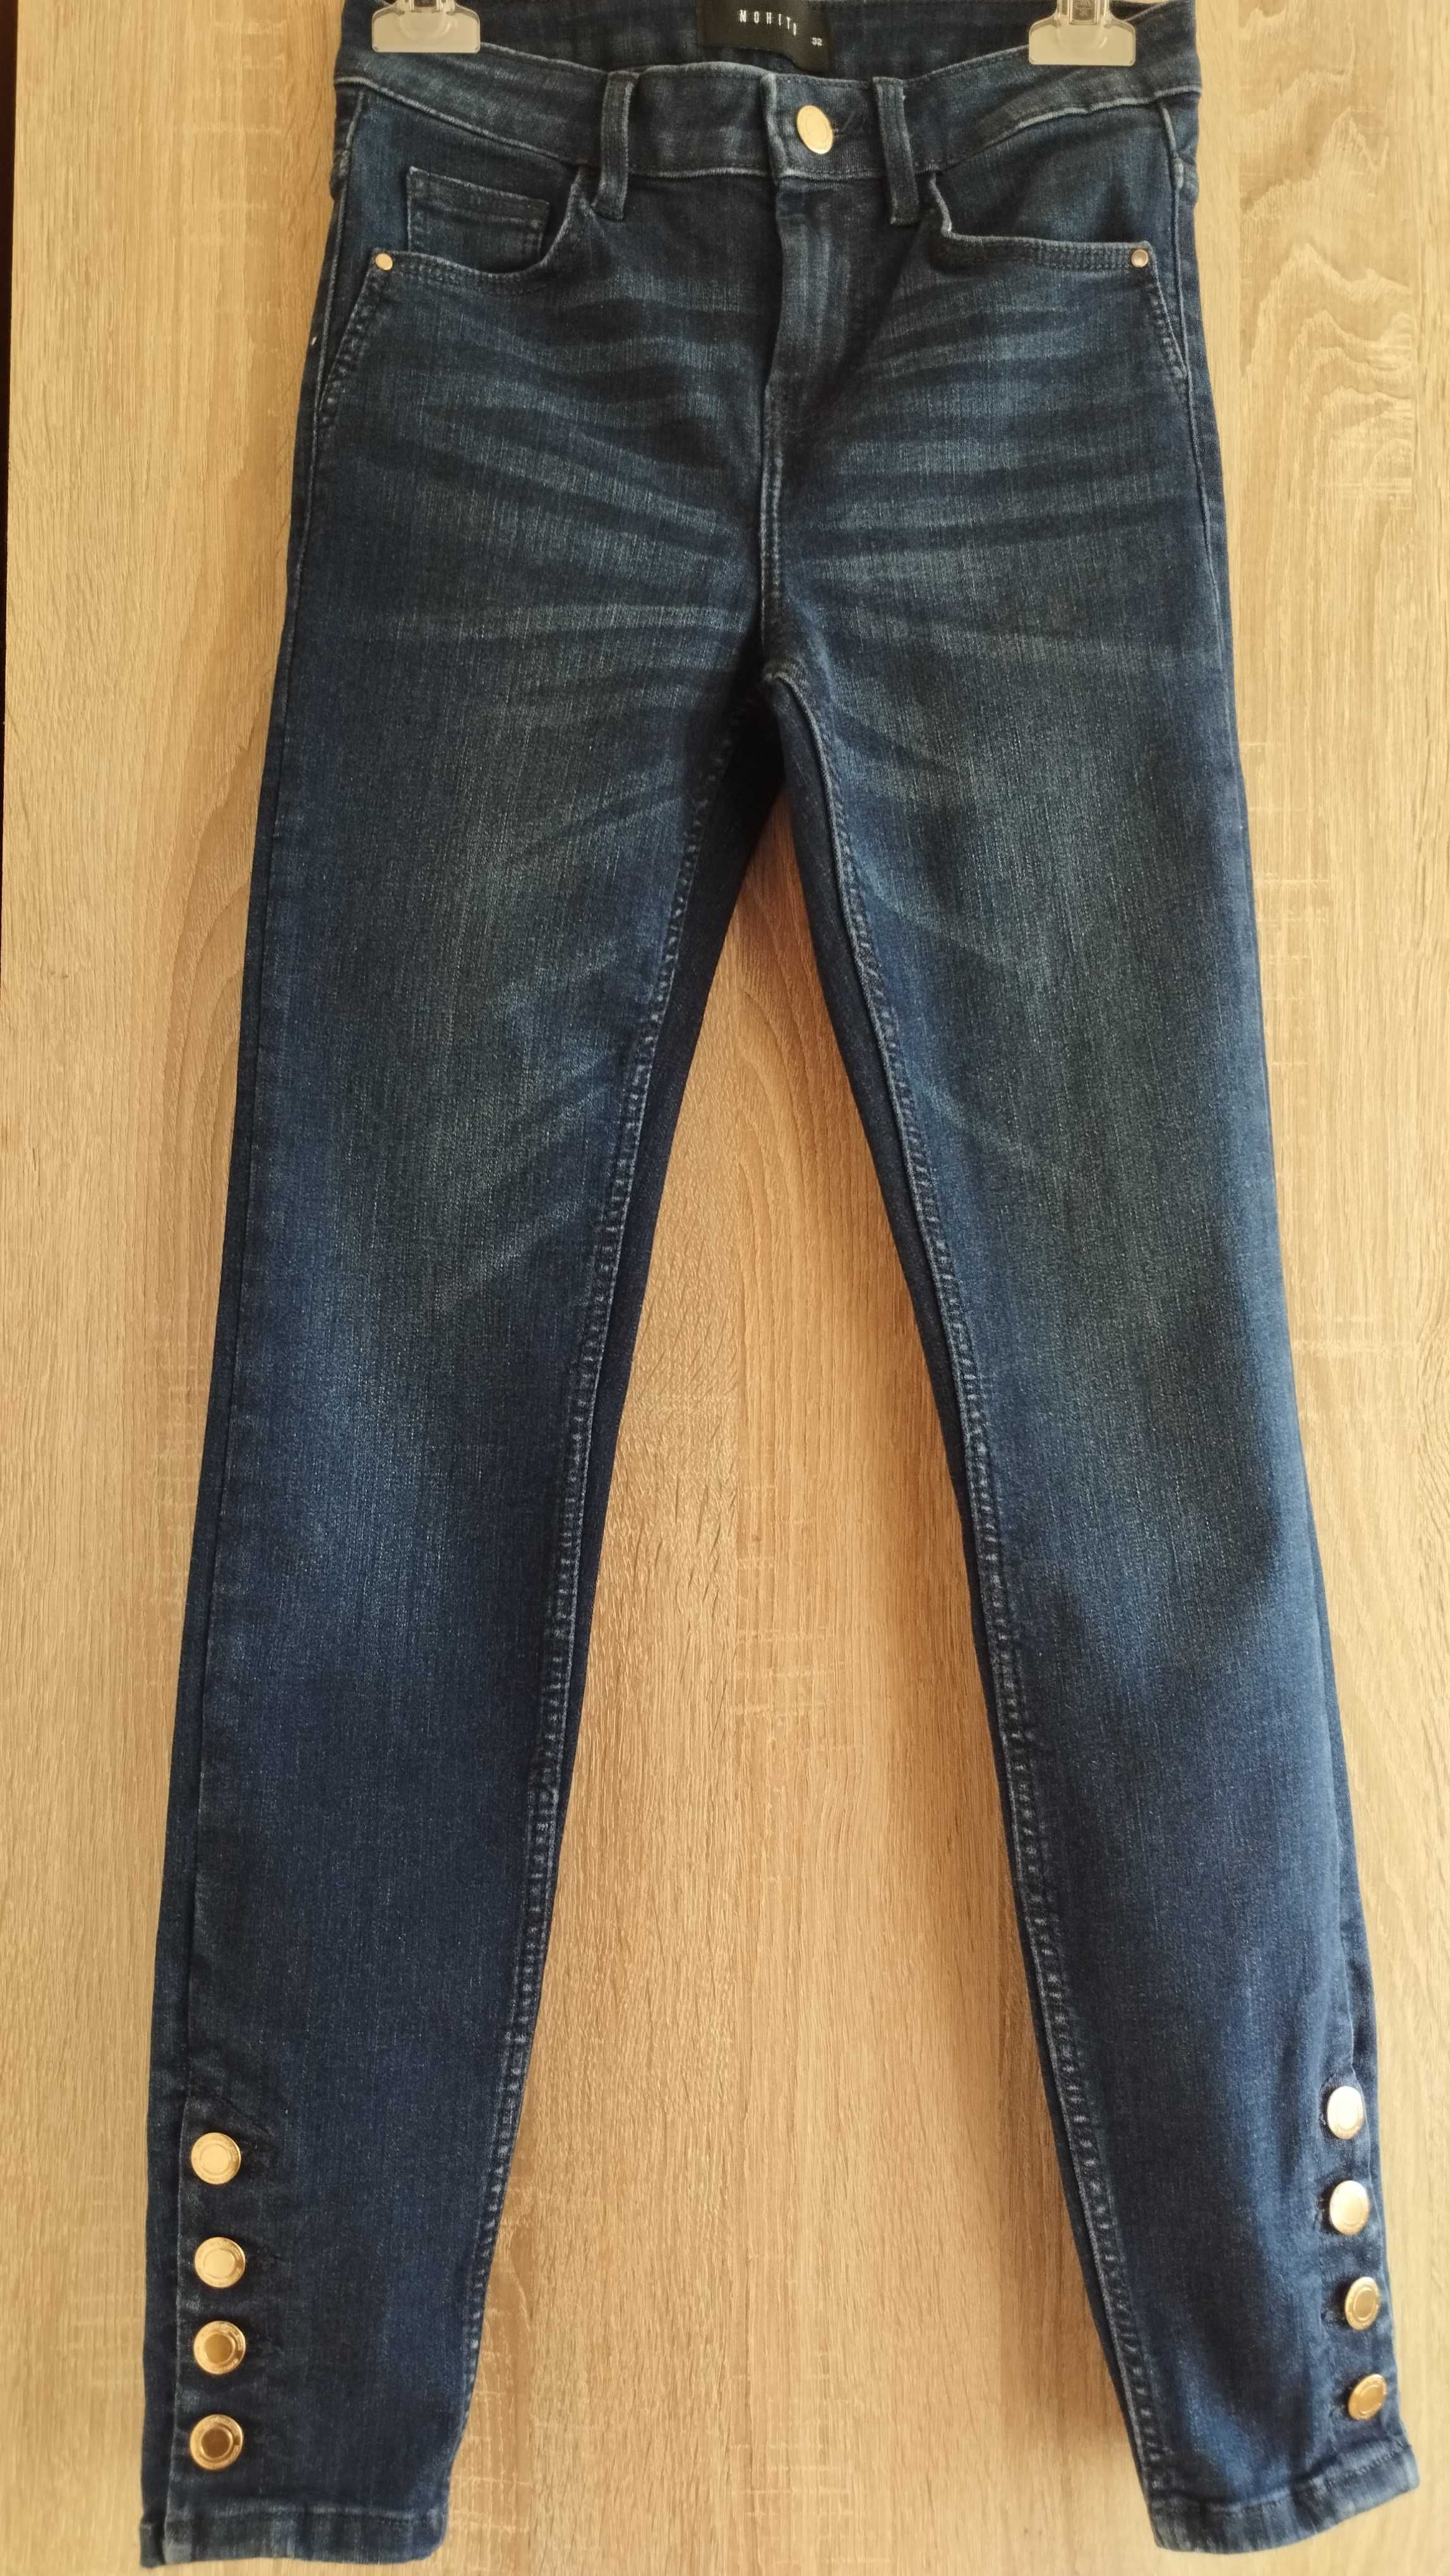 Spodnie jeansowe damskie Mohito - rozmiar 32